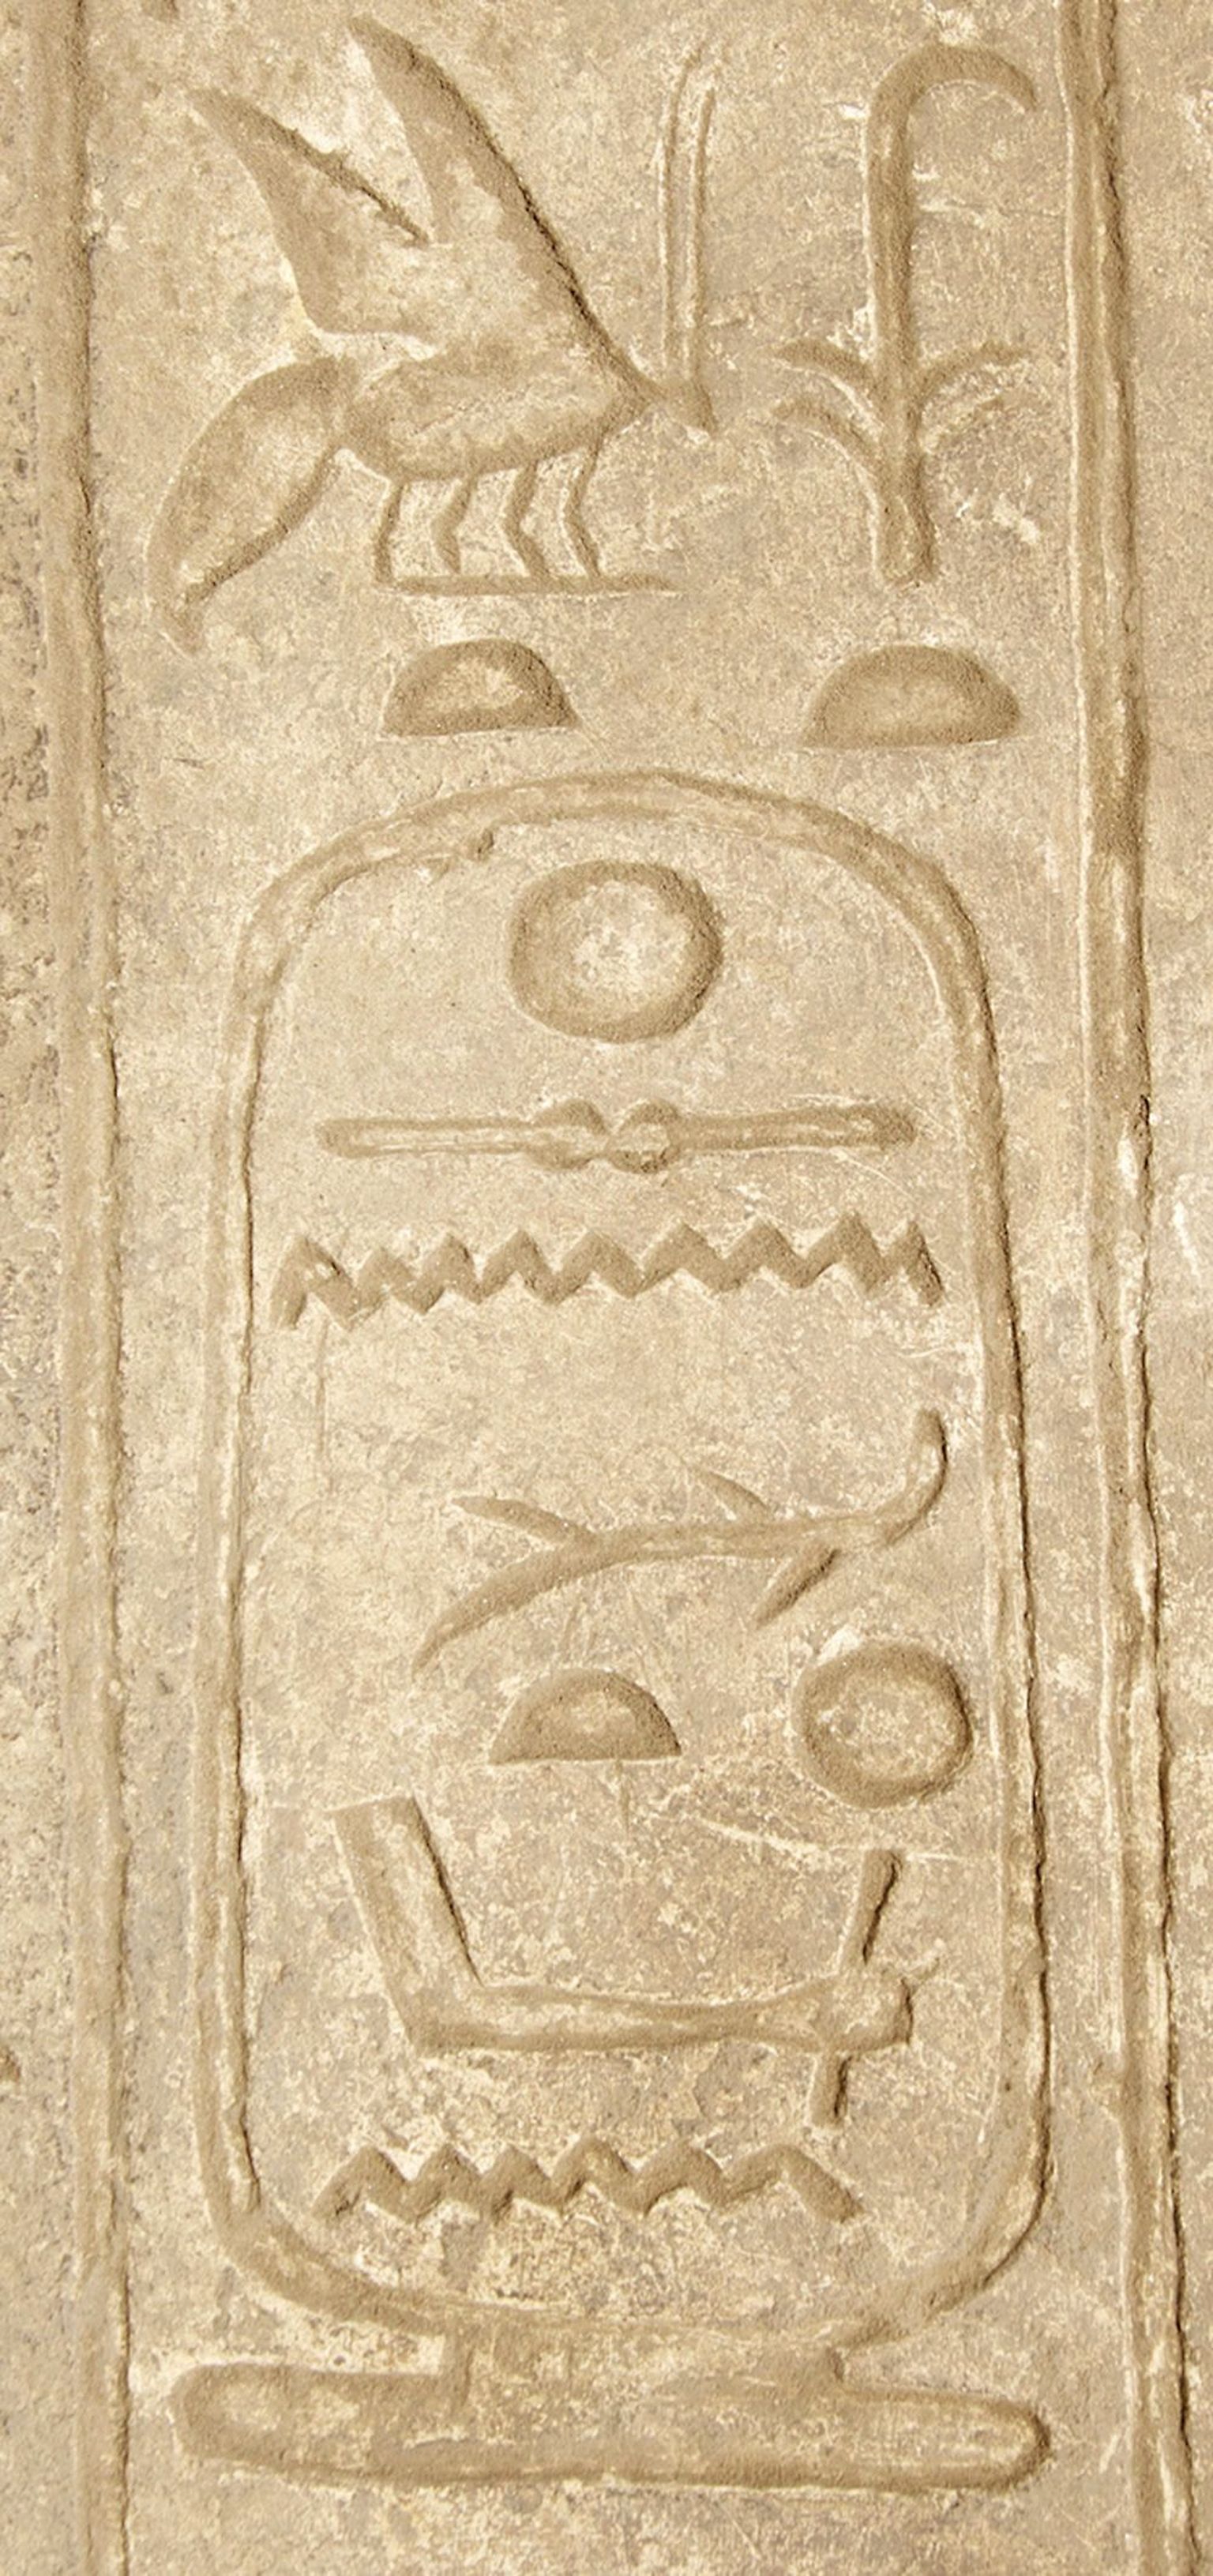 Prantsuse-Egiptuse arheoloogidemeeskond leidis Senakht-en-Re nimelise valitseja kohta märkme Karnaki templikompleksist ühelt lubjakivist väravalt